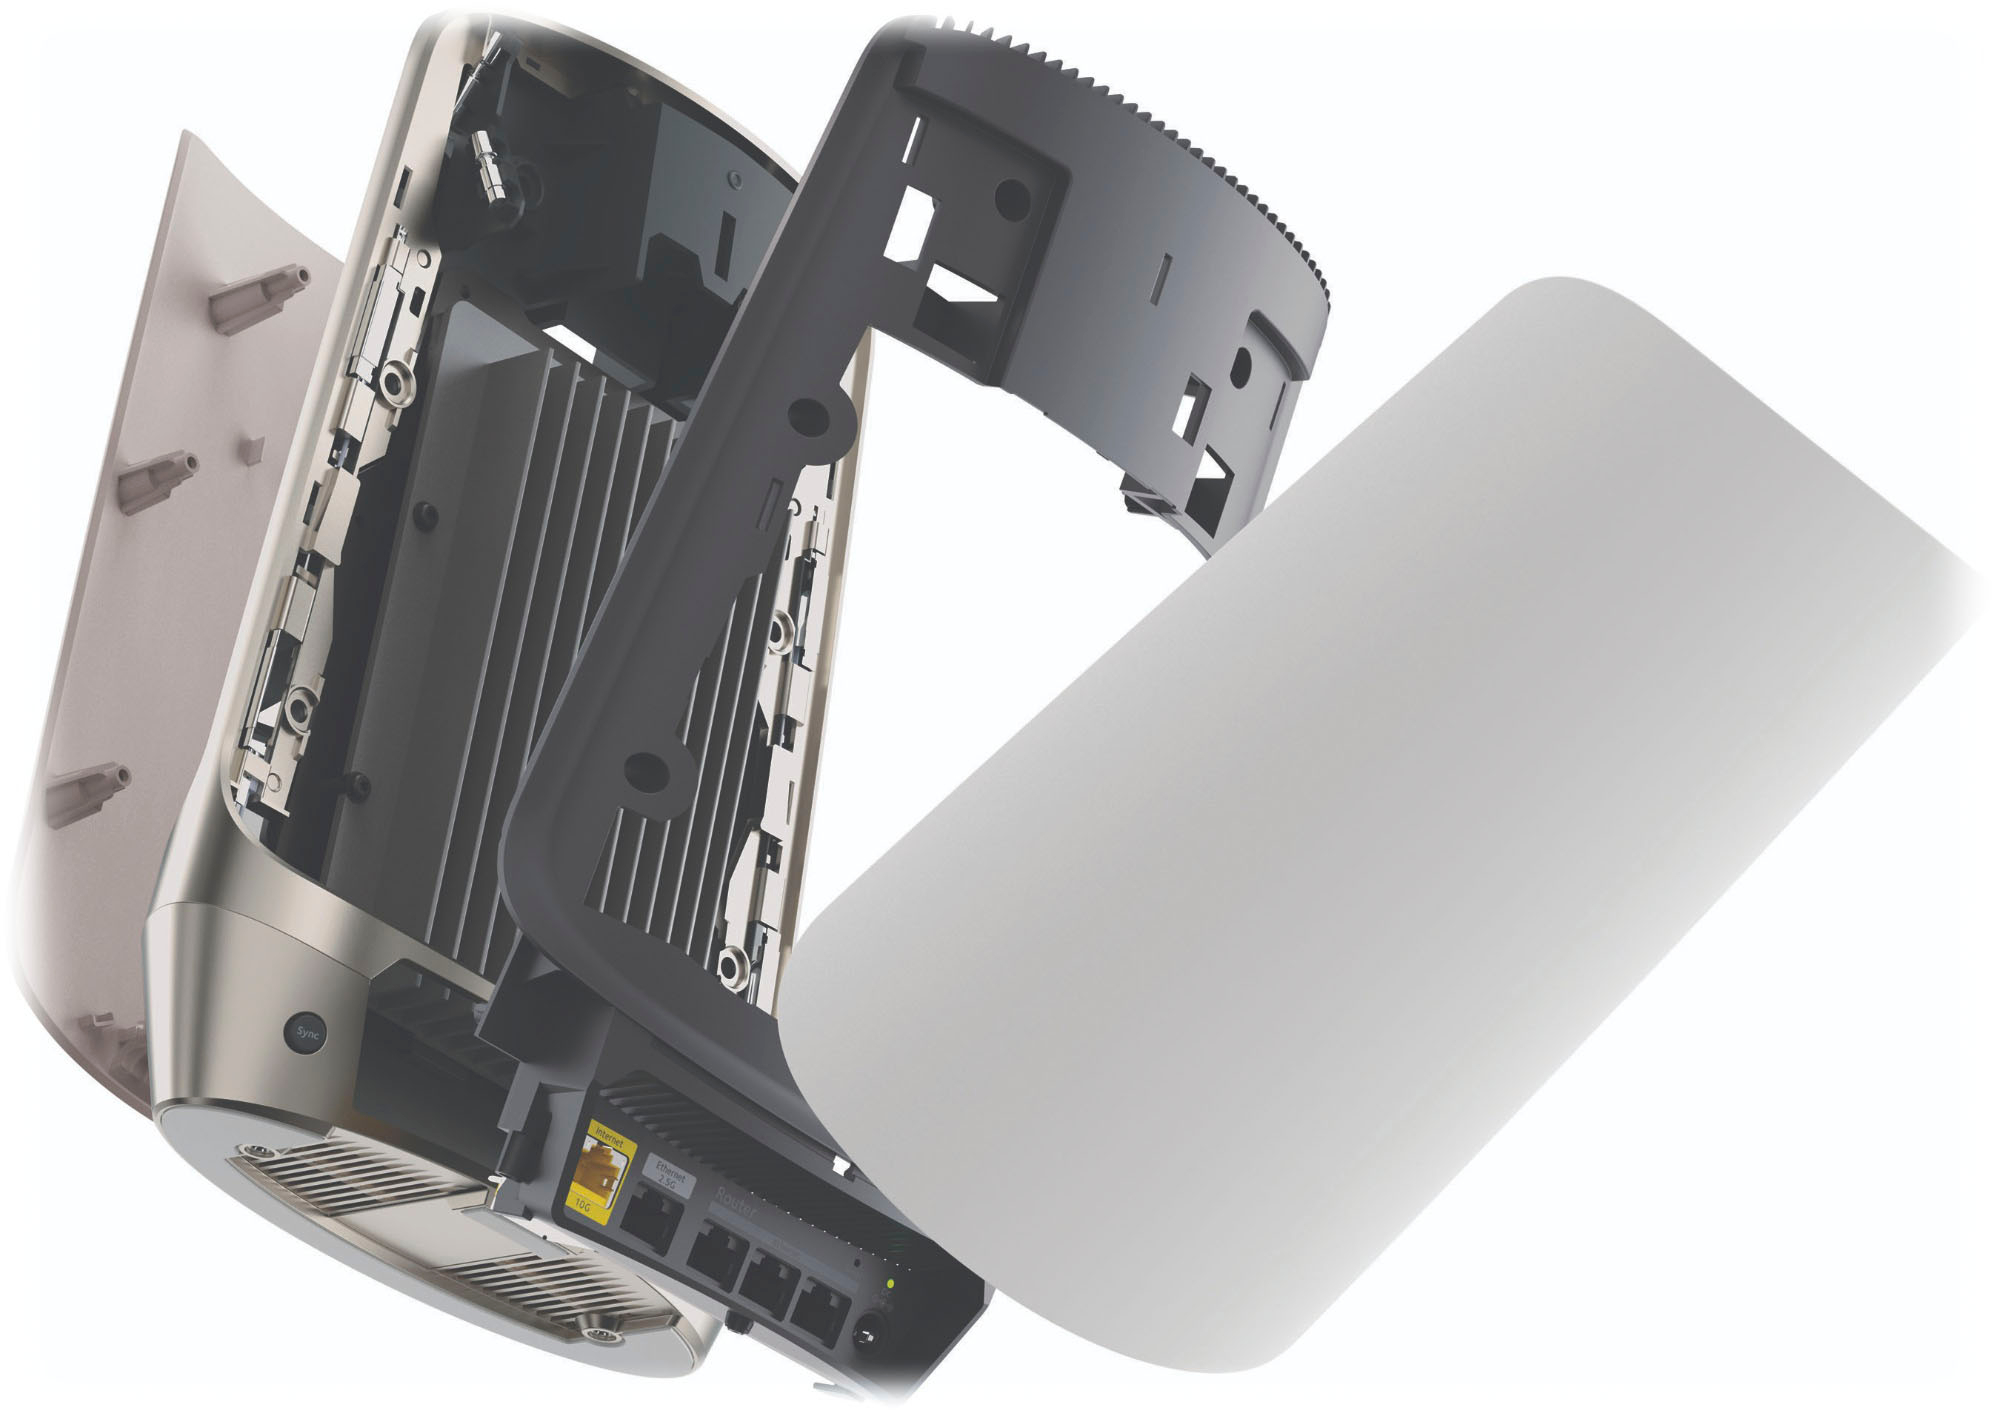 NETGEAR Orbi 960 Series AXE11000 Quad-Band Mesh Wi-Fi 6E System (2-pack)  White RBKE962-100NAS - Best Buy